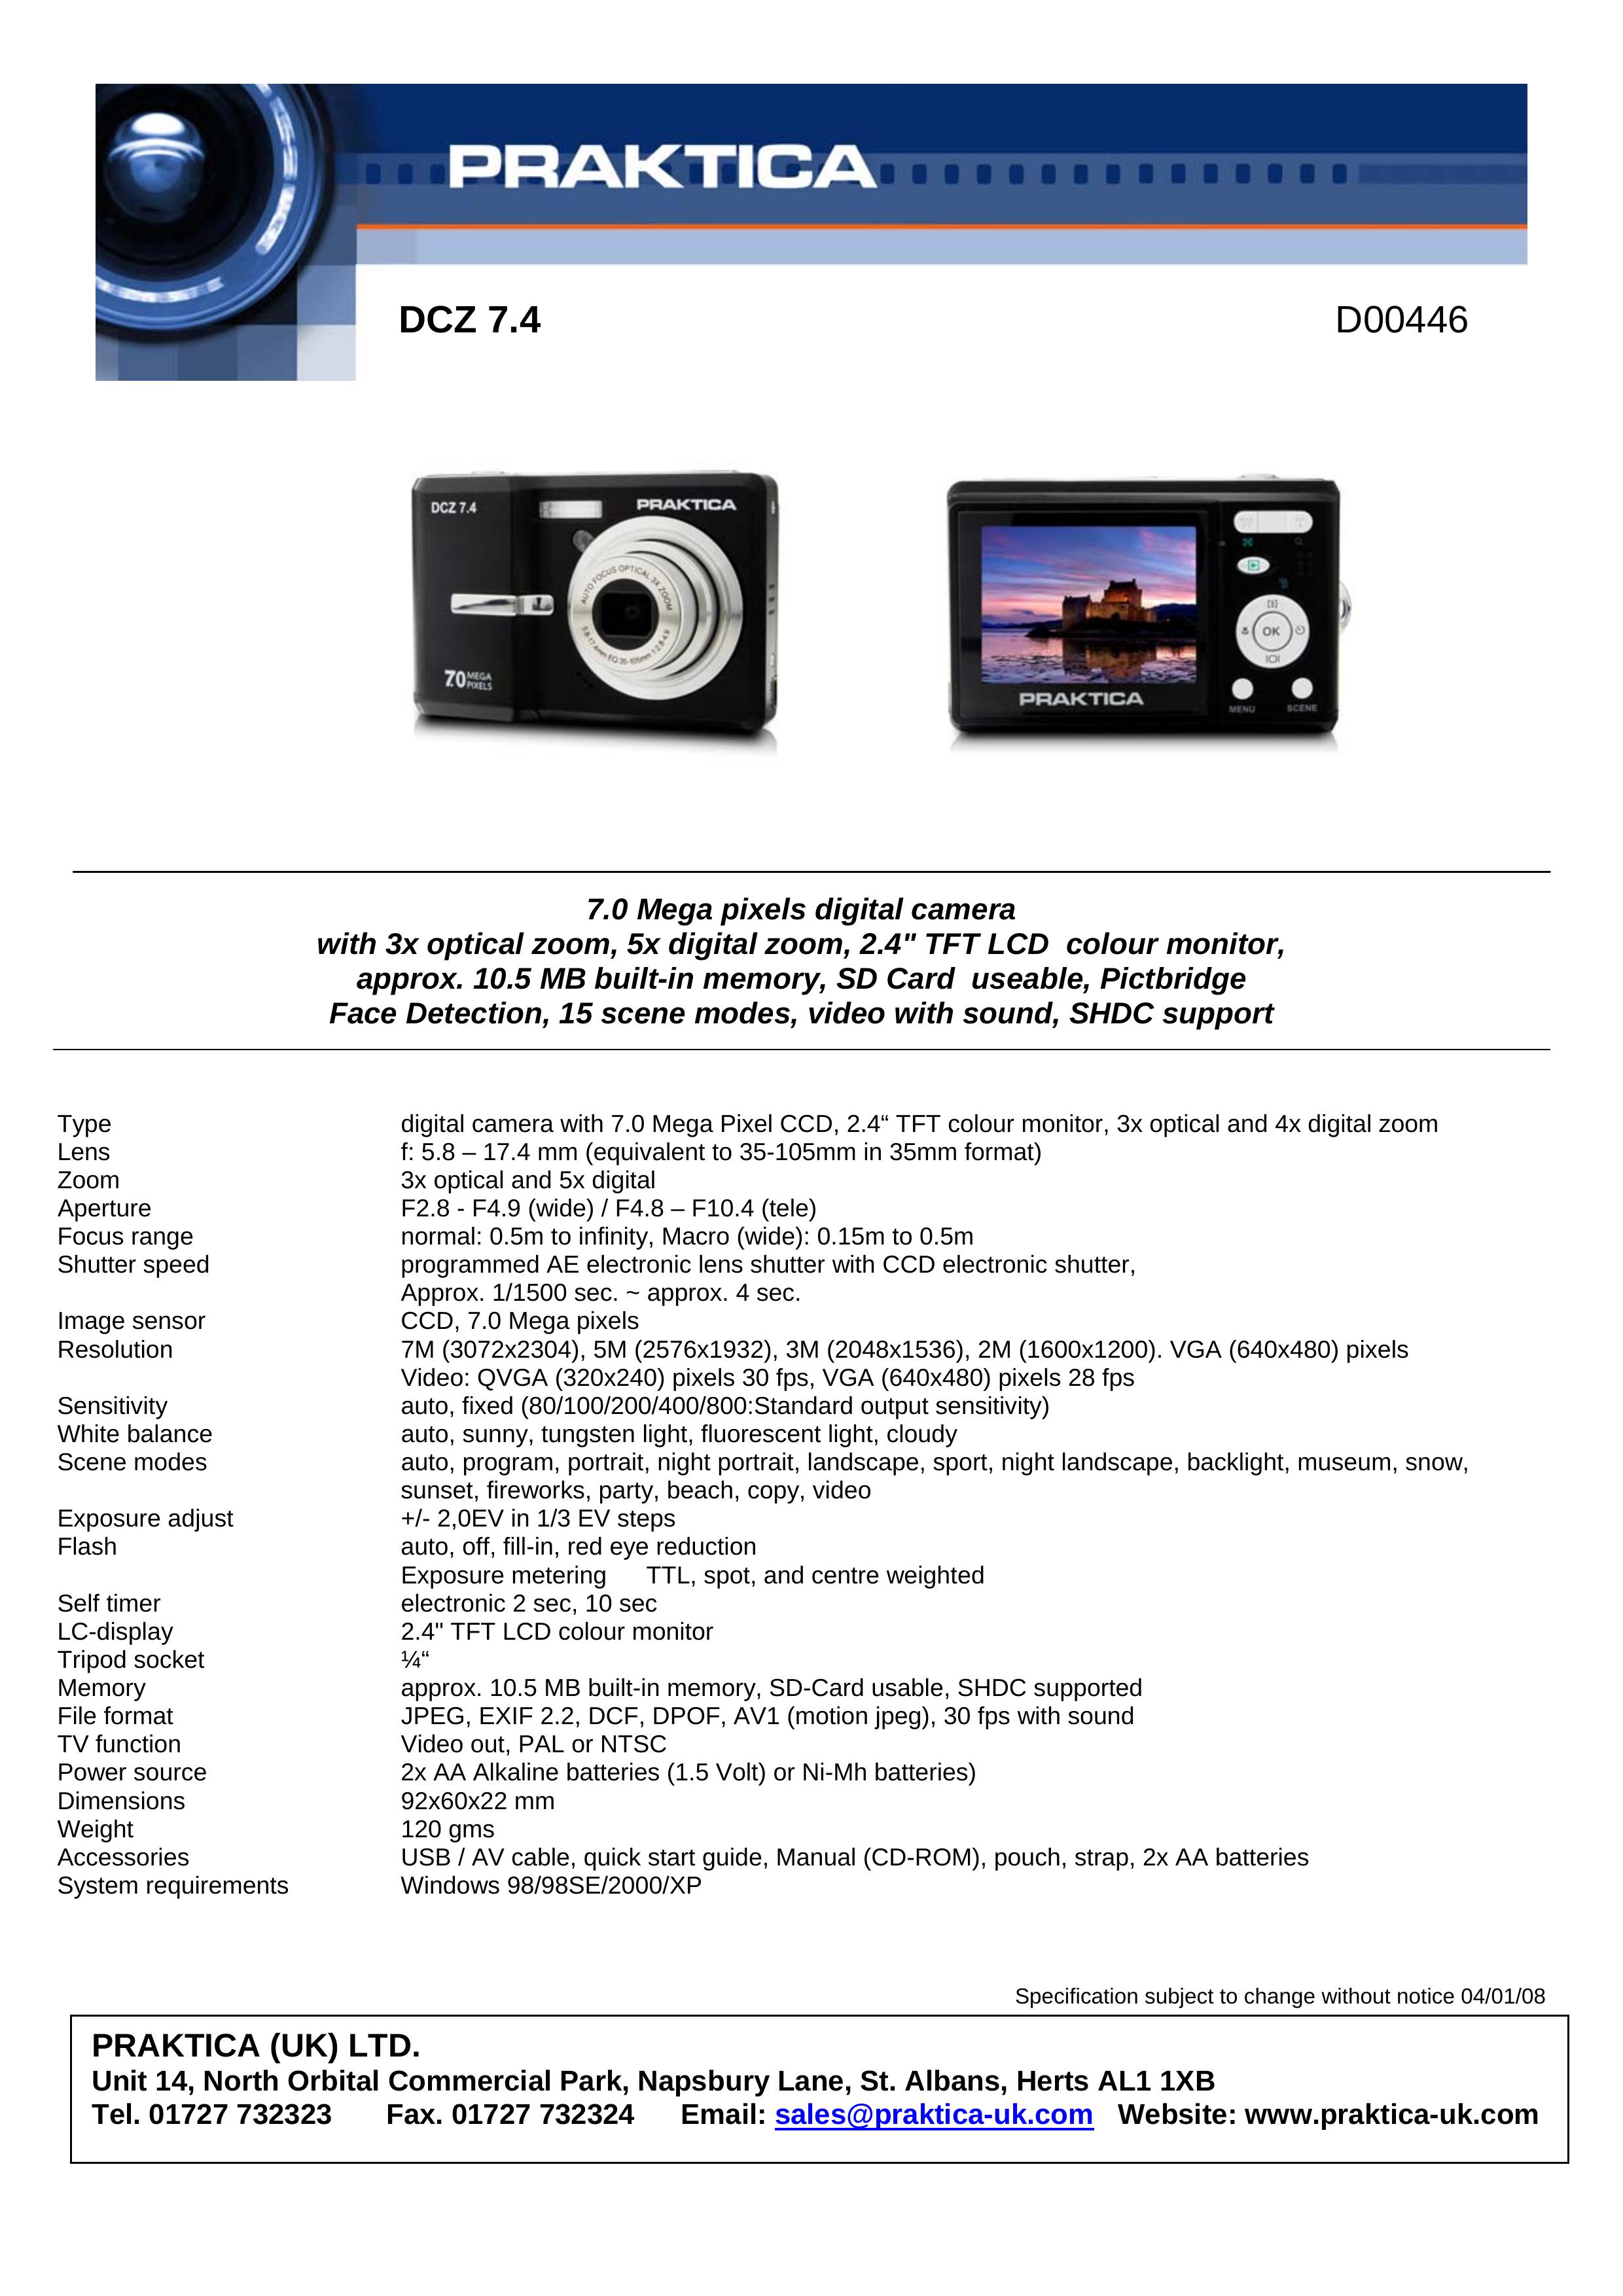 Praktica D00446 Digital Camera User Manual